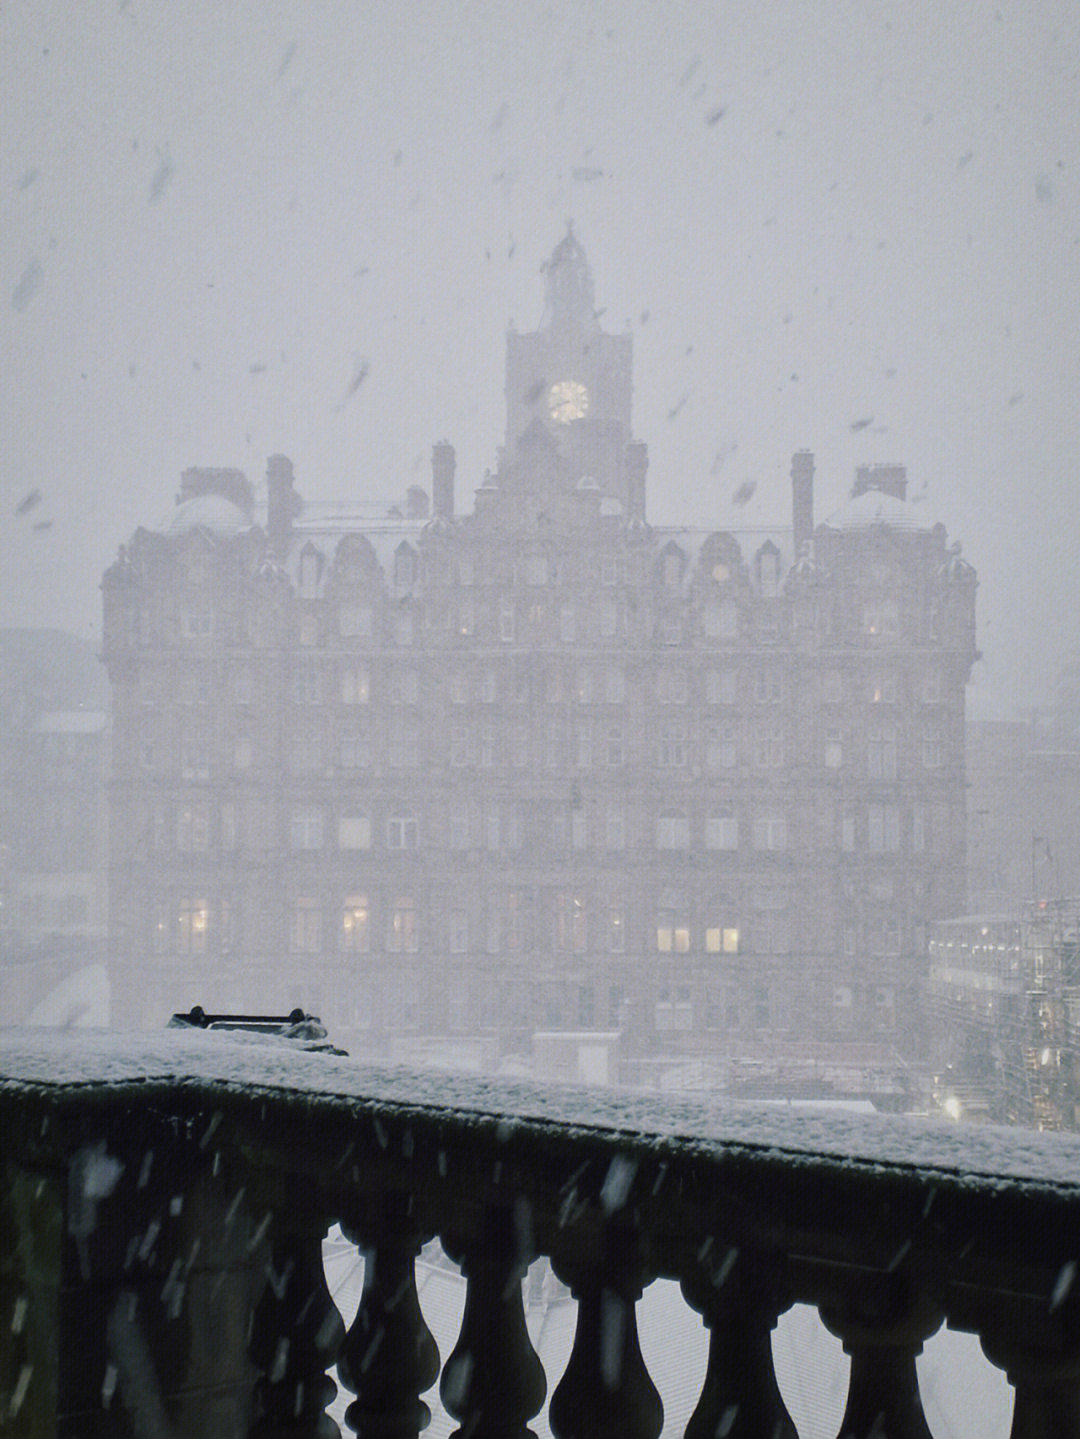 爱丁堡雪中告别比见面时盛大百倍好不好